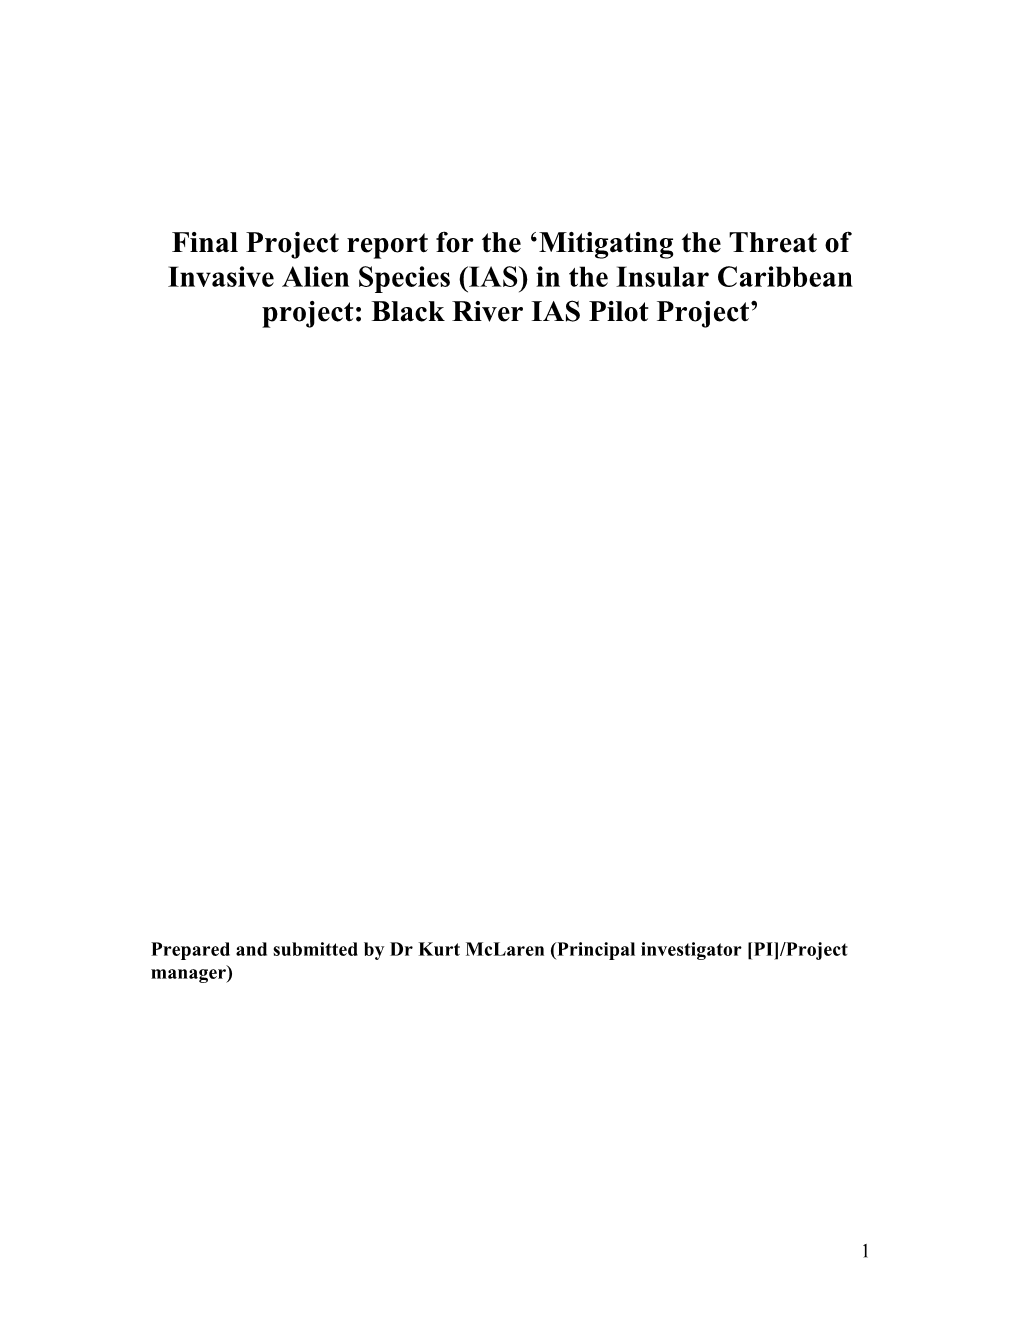 Black River Pilot Project